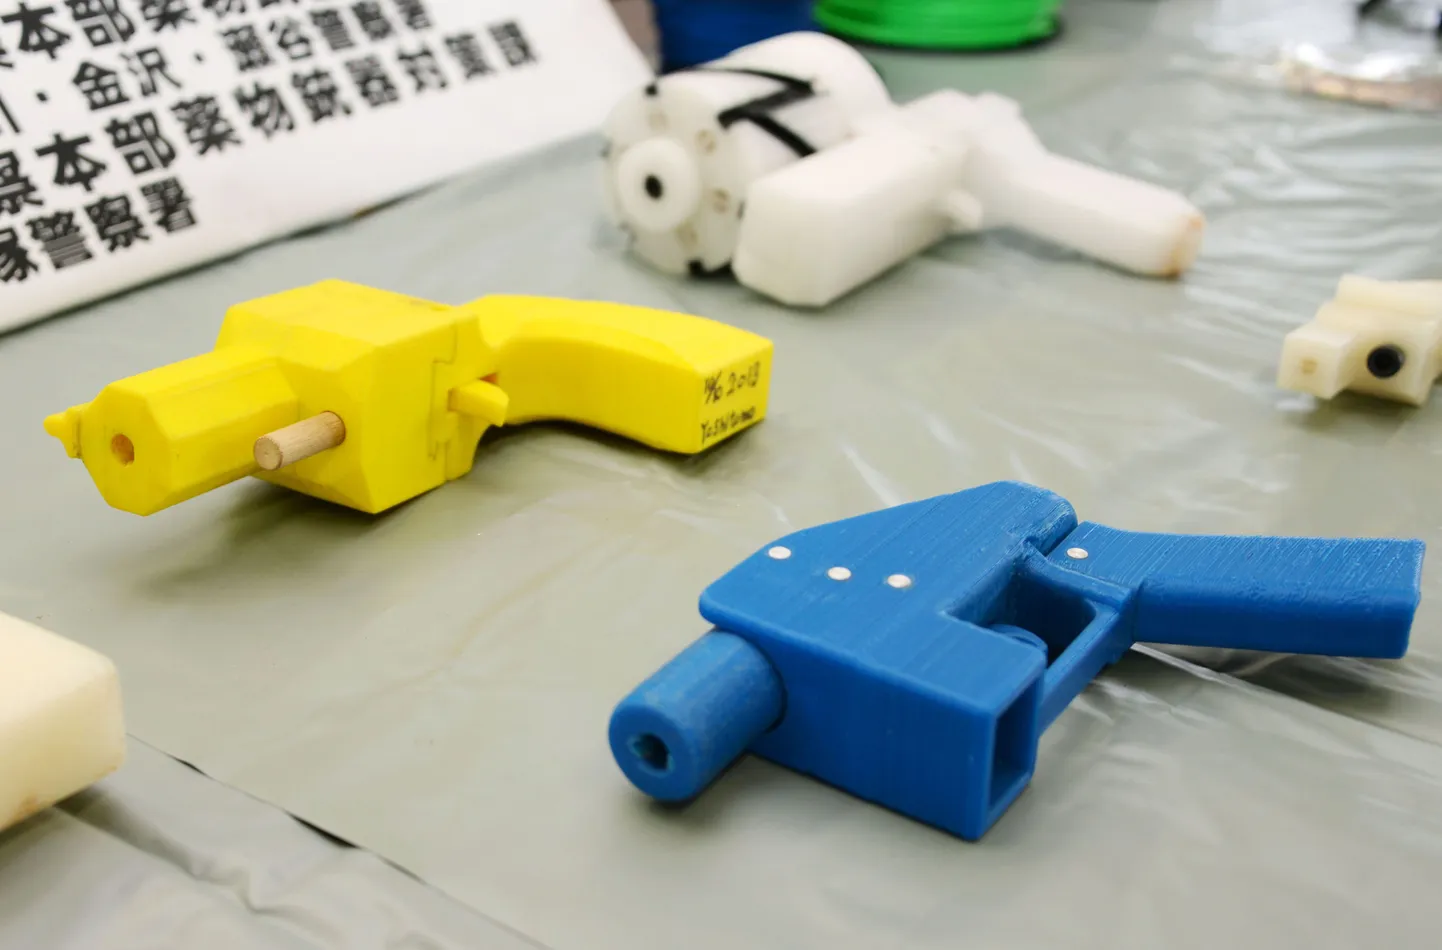 Jaapani politsei konfiskeeritud 3D-prinditud relvad. Alates ülejärgmisest nädalast on kõigil huvilistel võimalik selliste relvade jooniseid seaduslikult alla laadida.